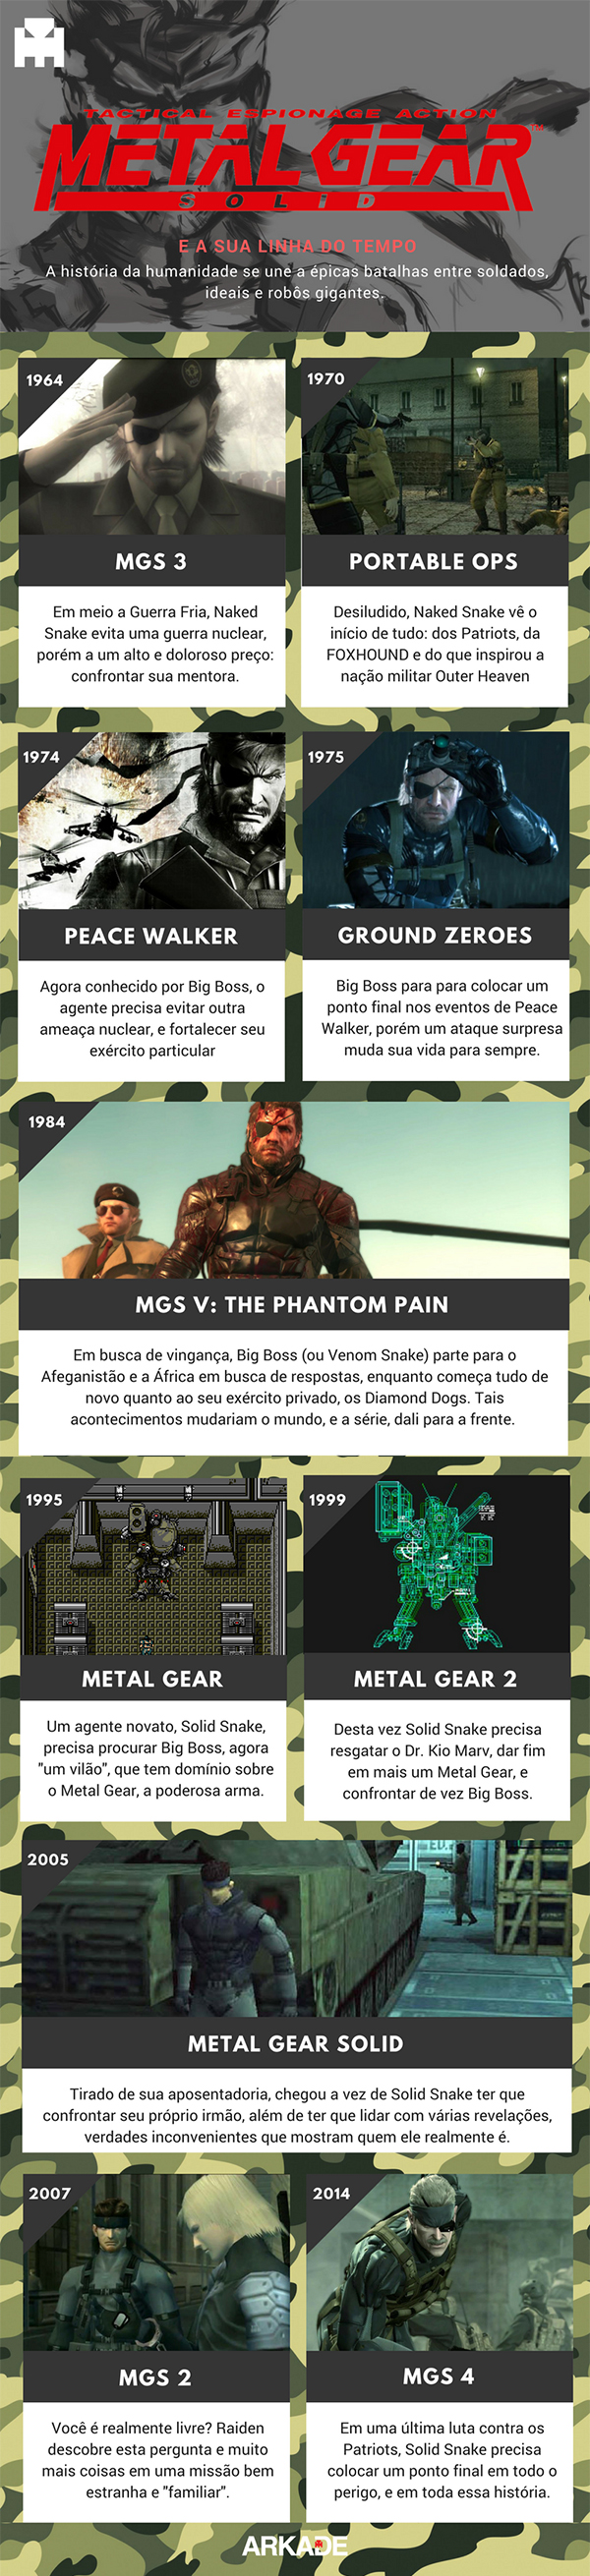 Infográfico - A Linha do Tempo definitiva de Metal Gear Solid